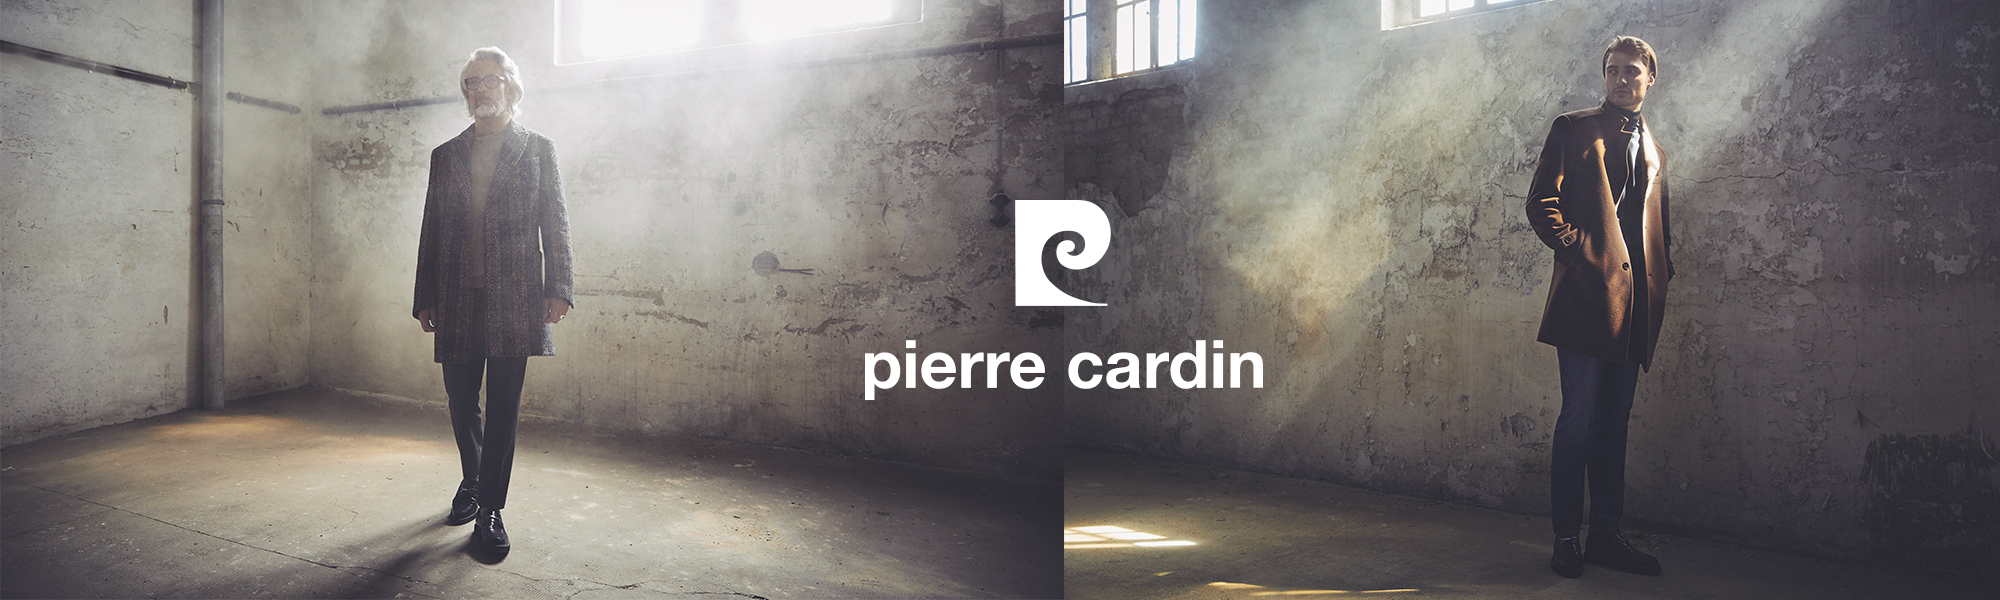 Pierre Cardin - Der Jeans-Hersteller für Anspruchsvolle | Jeans Blog |  Jeans-Manufaktur